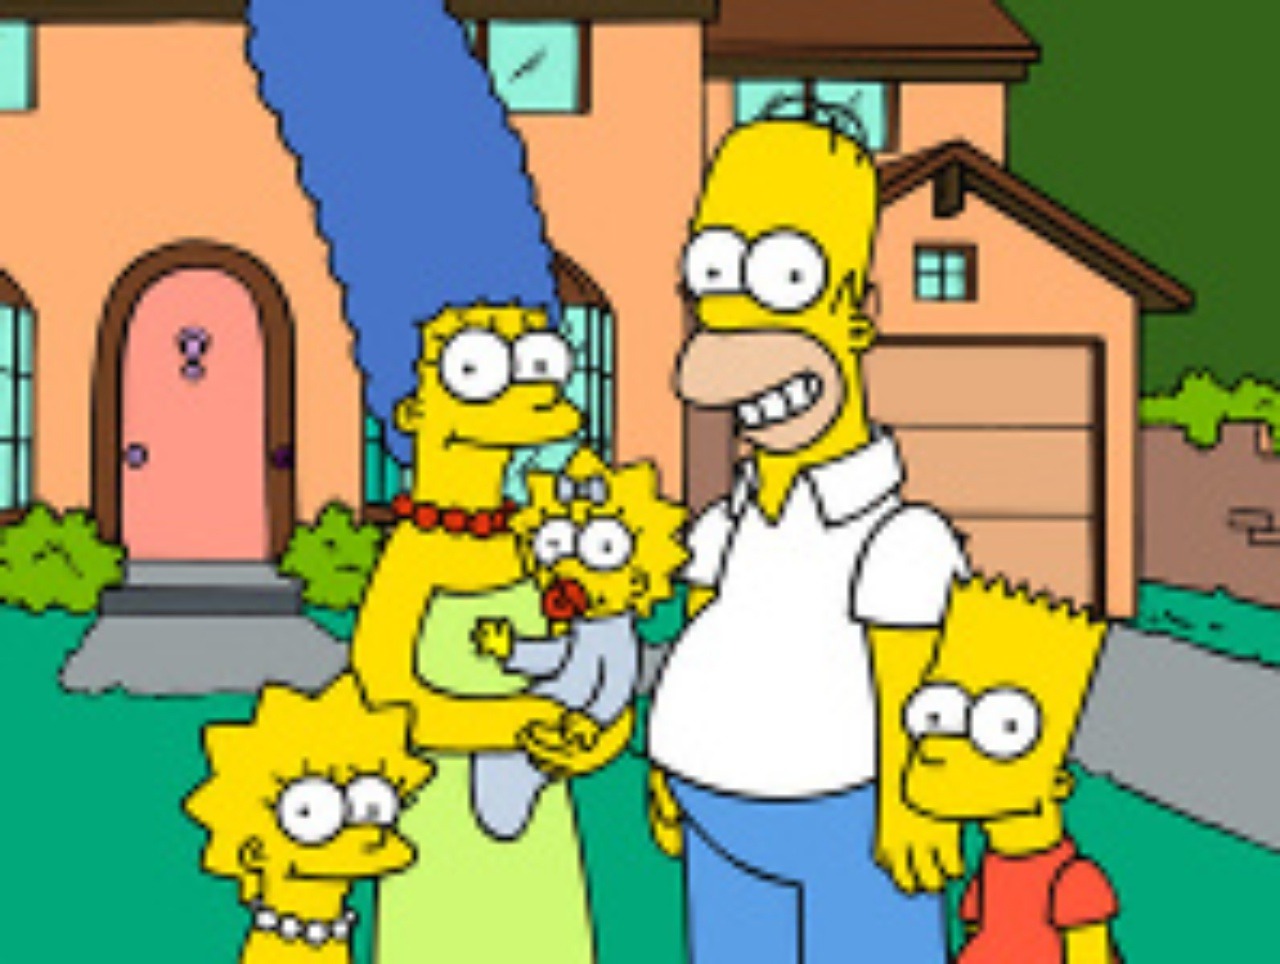 Obľúbení Simpsonovci